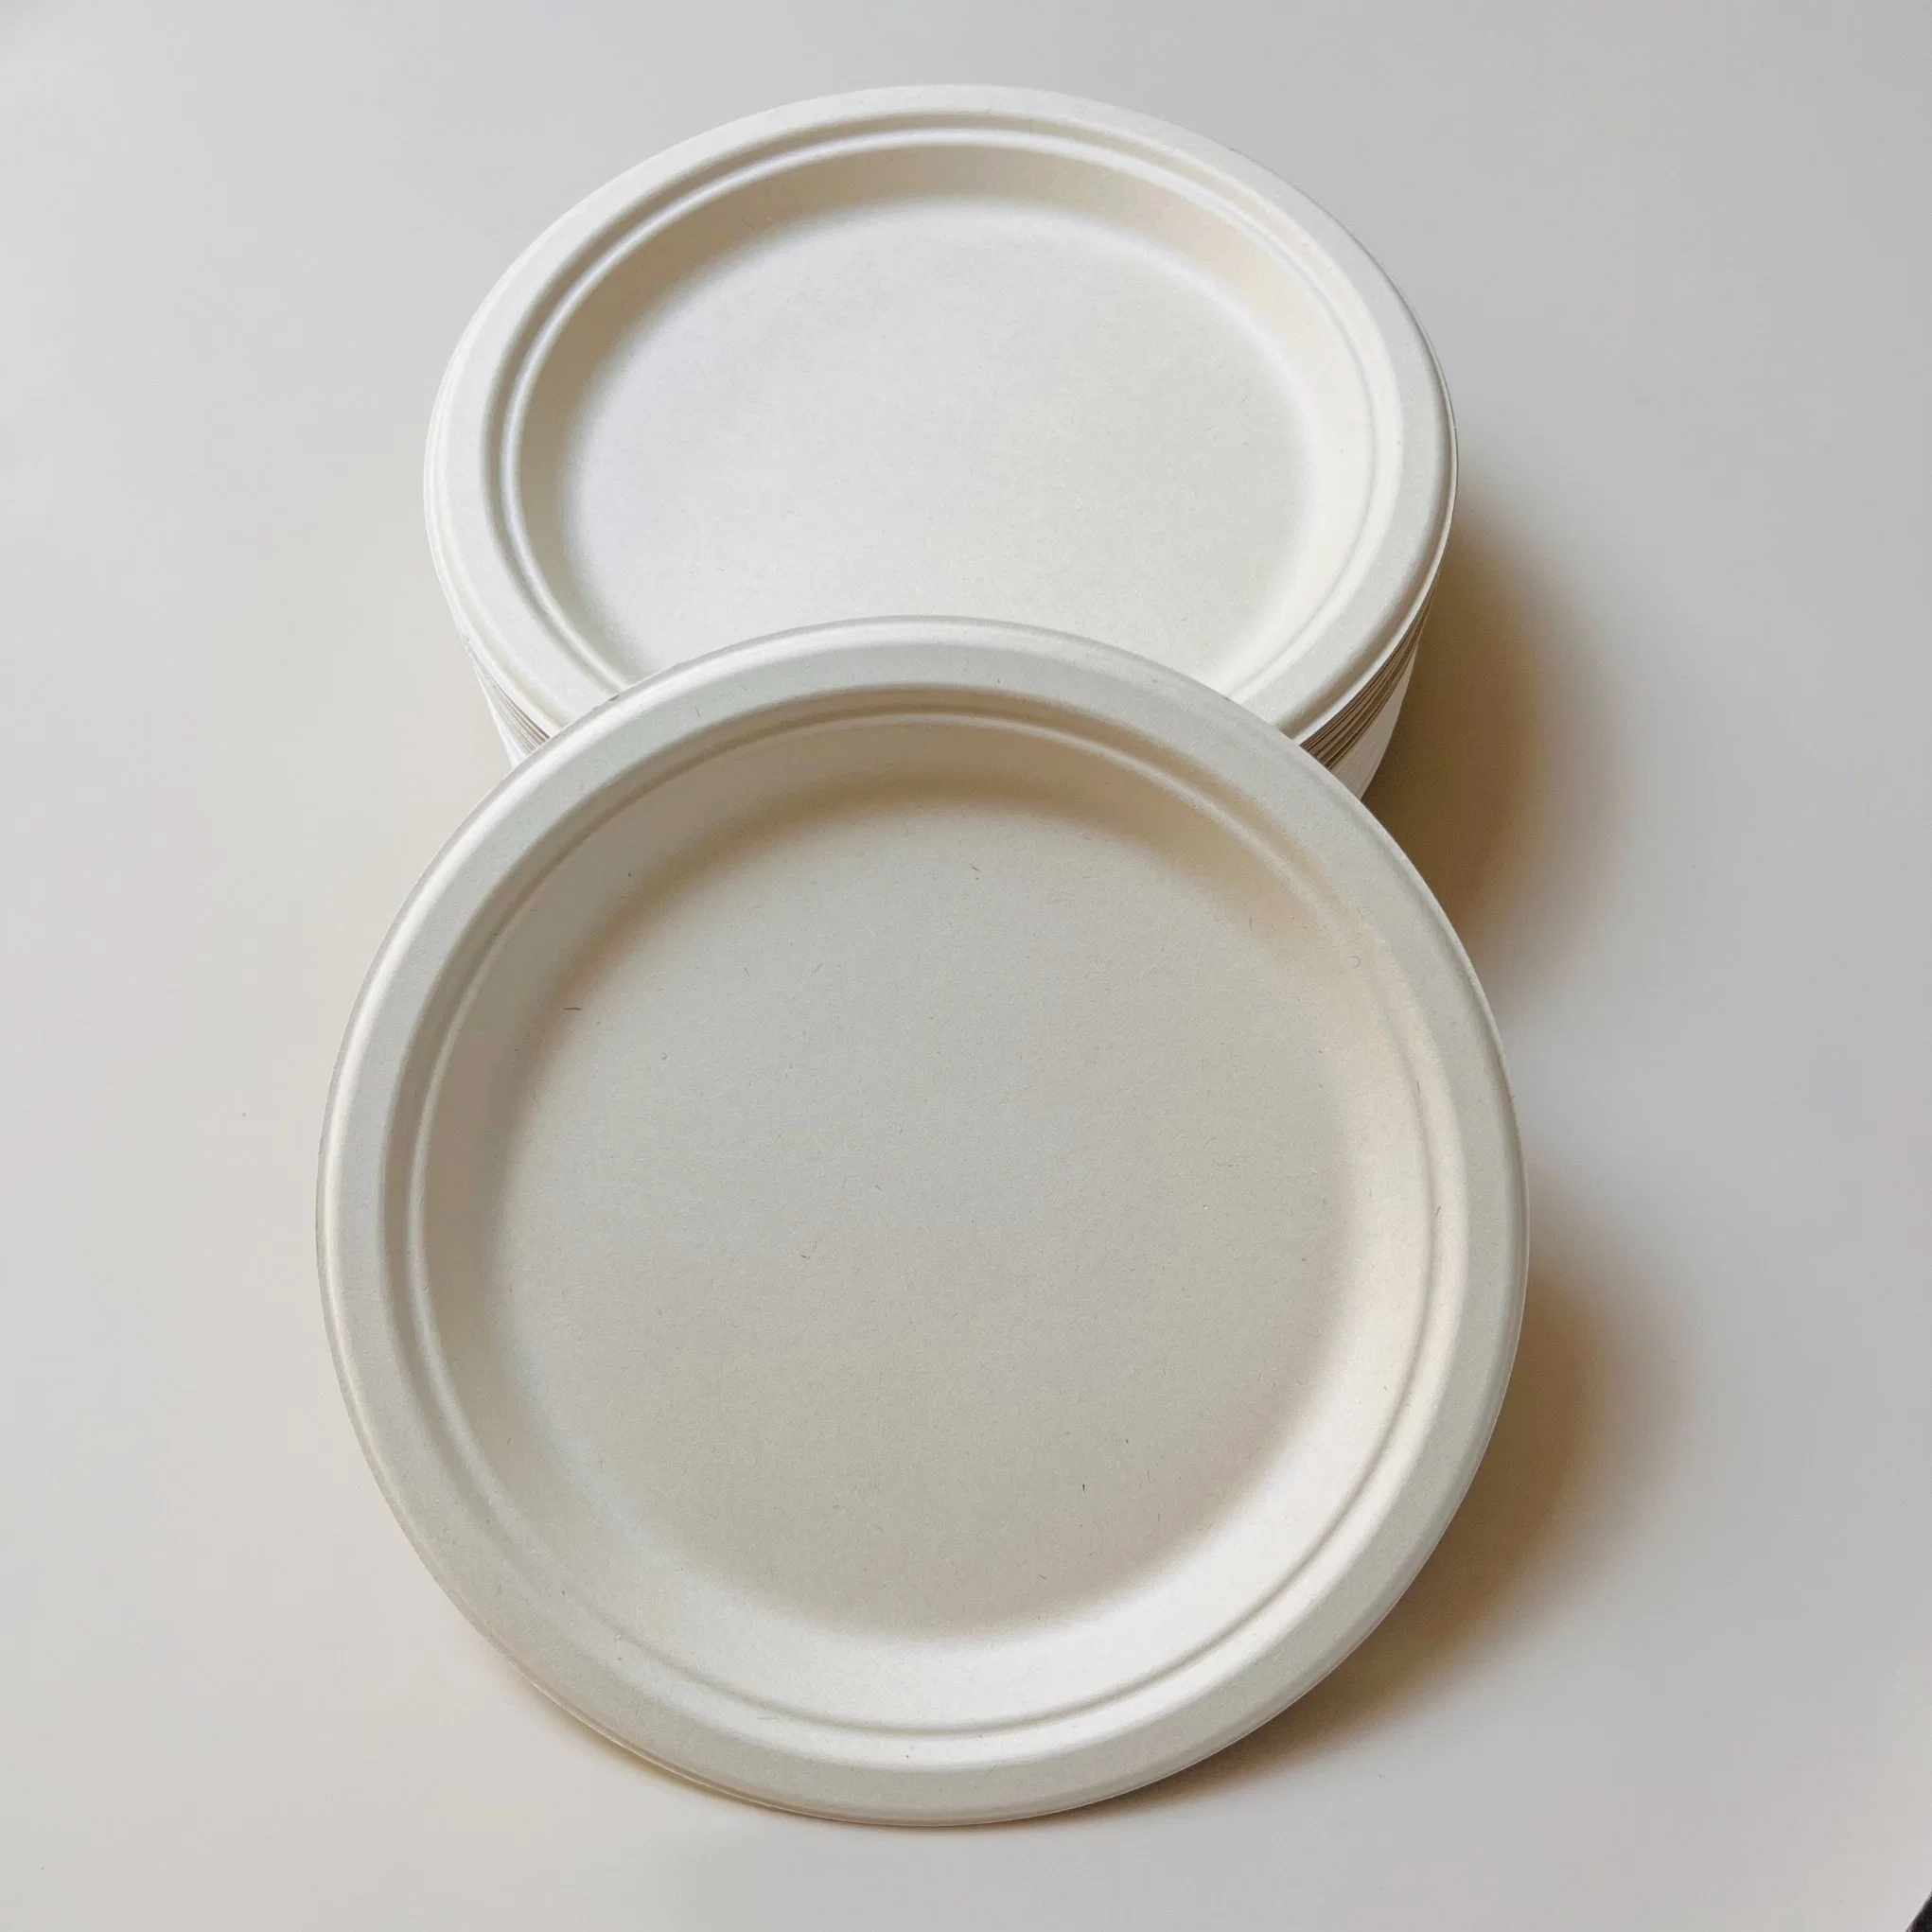 Bagaço de cana-de-açúcar placa redonda compostável placa de papel biodegradável descartável Placa de alimentos para recipientes